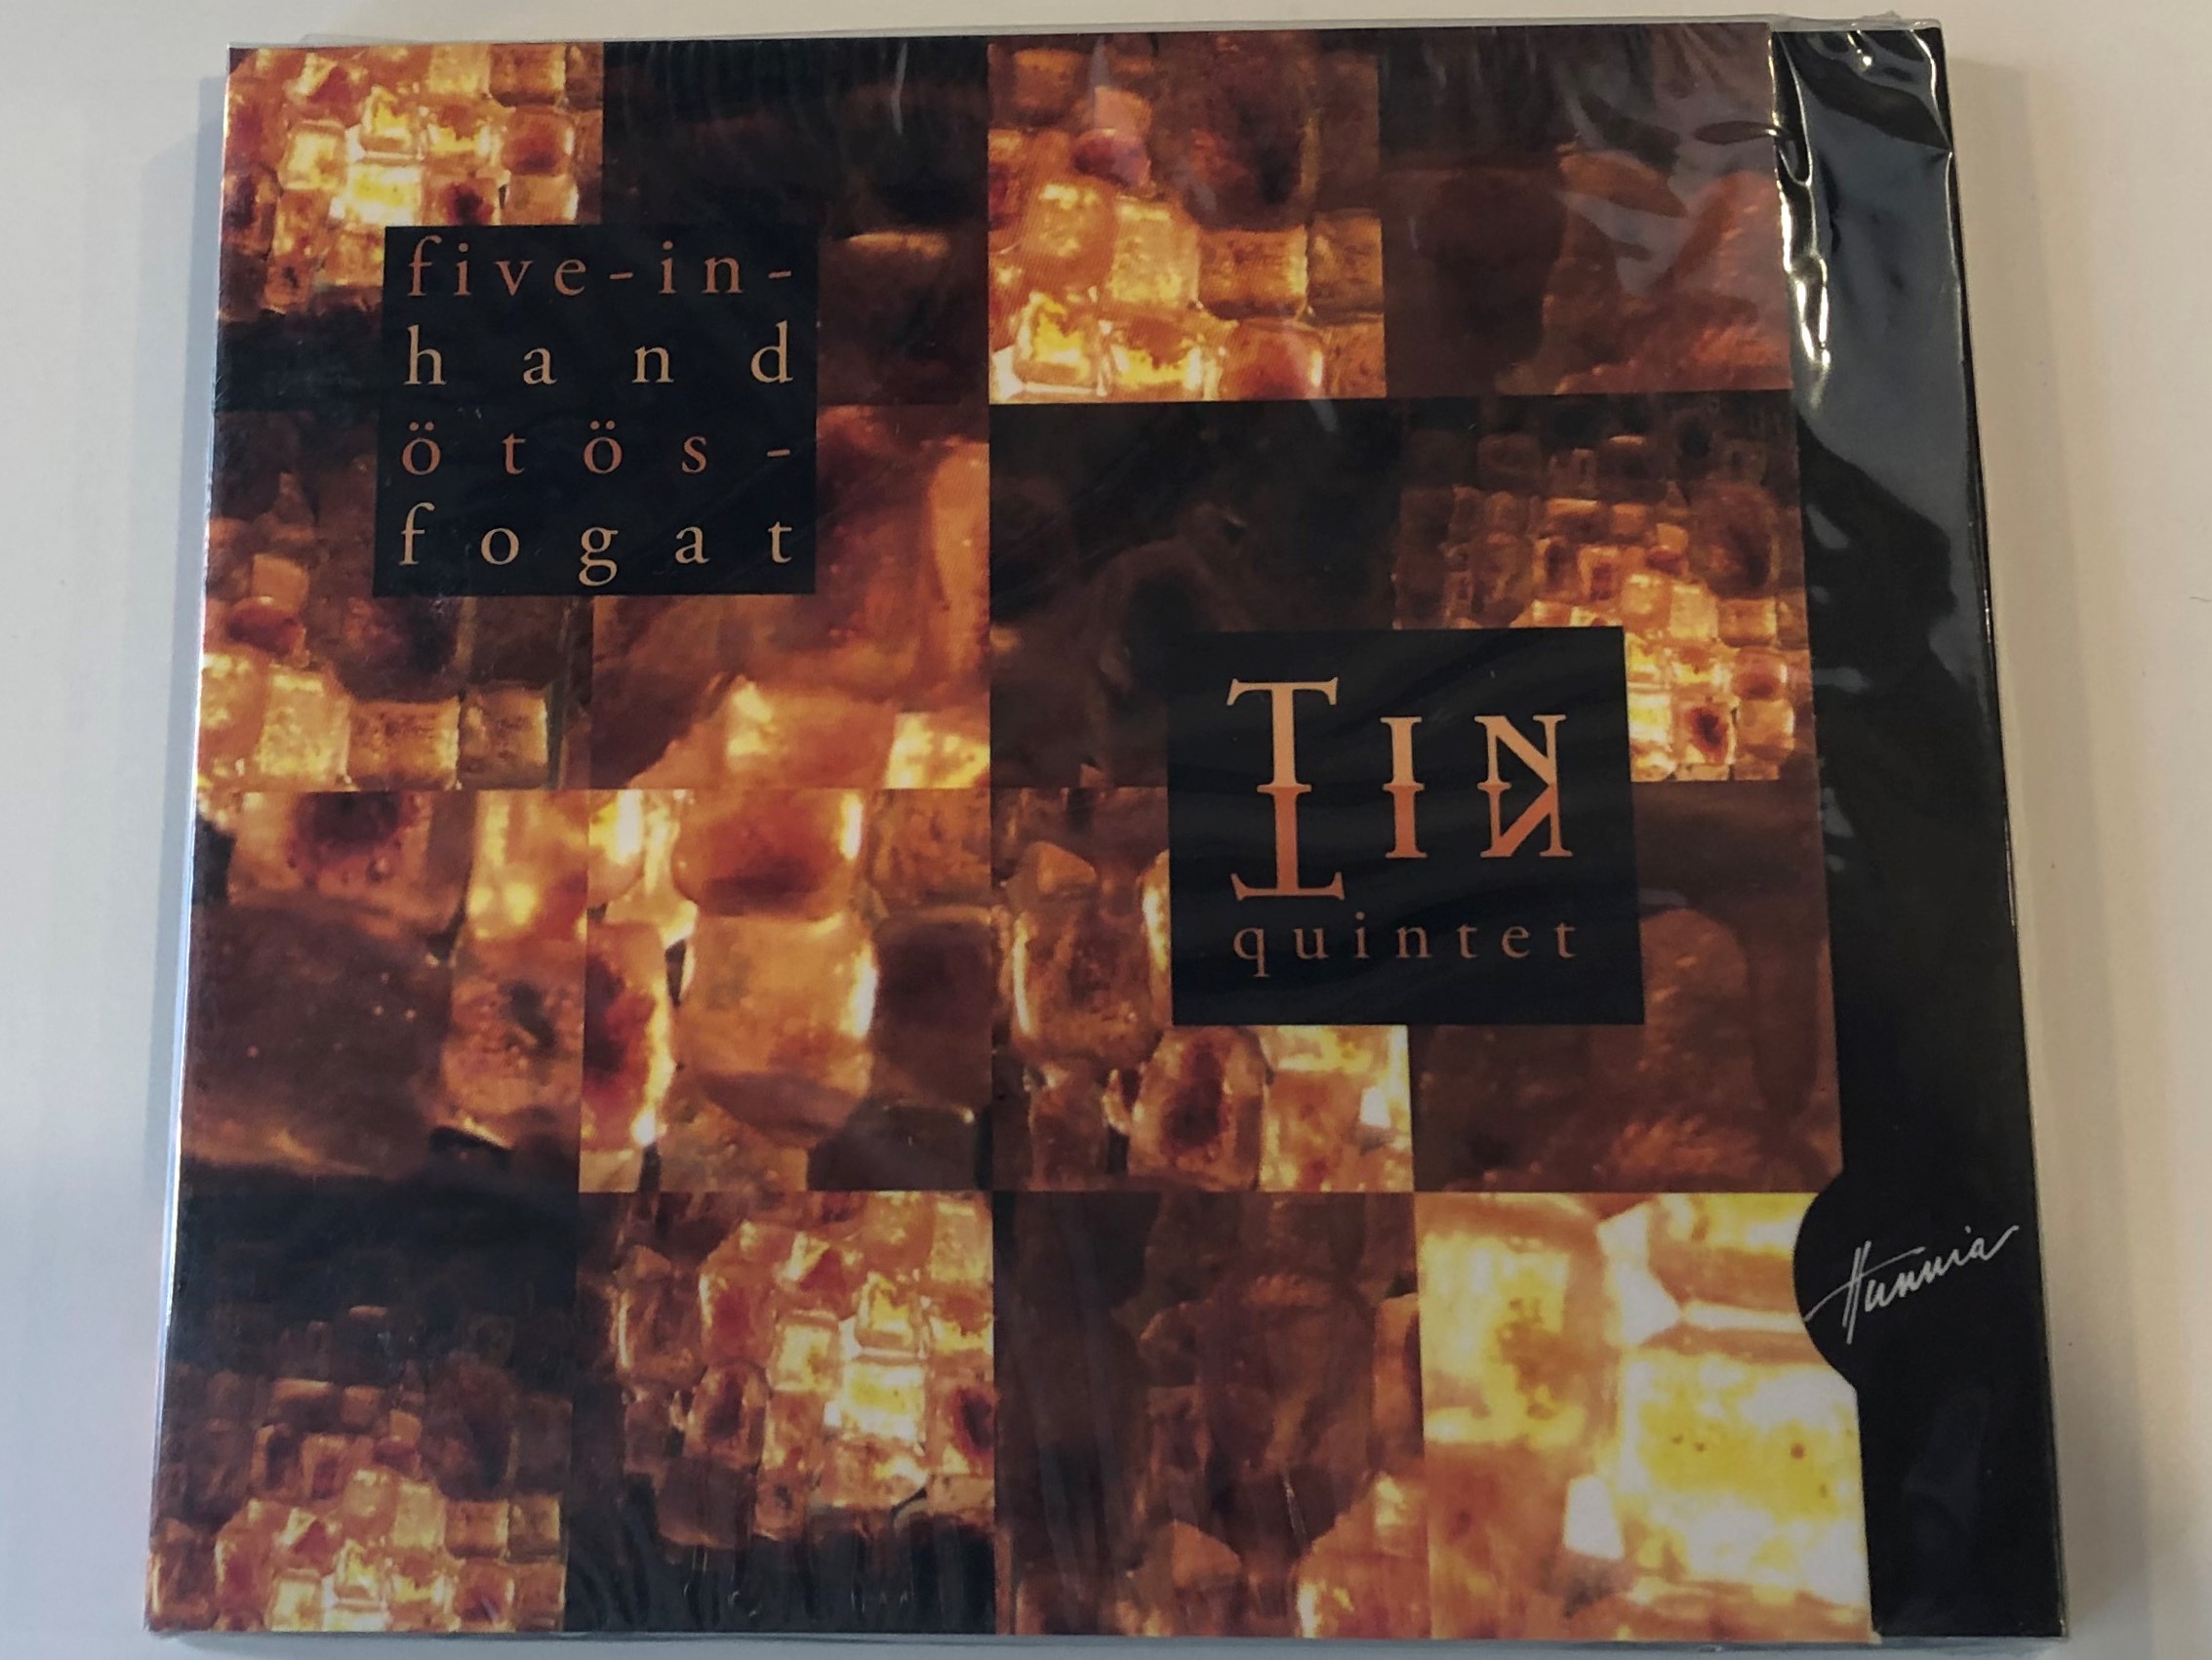 five-in-hand-t-sfogat-tin-tin-quintet-audio-cd-2004-ttq004-1-.jpg